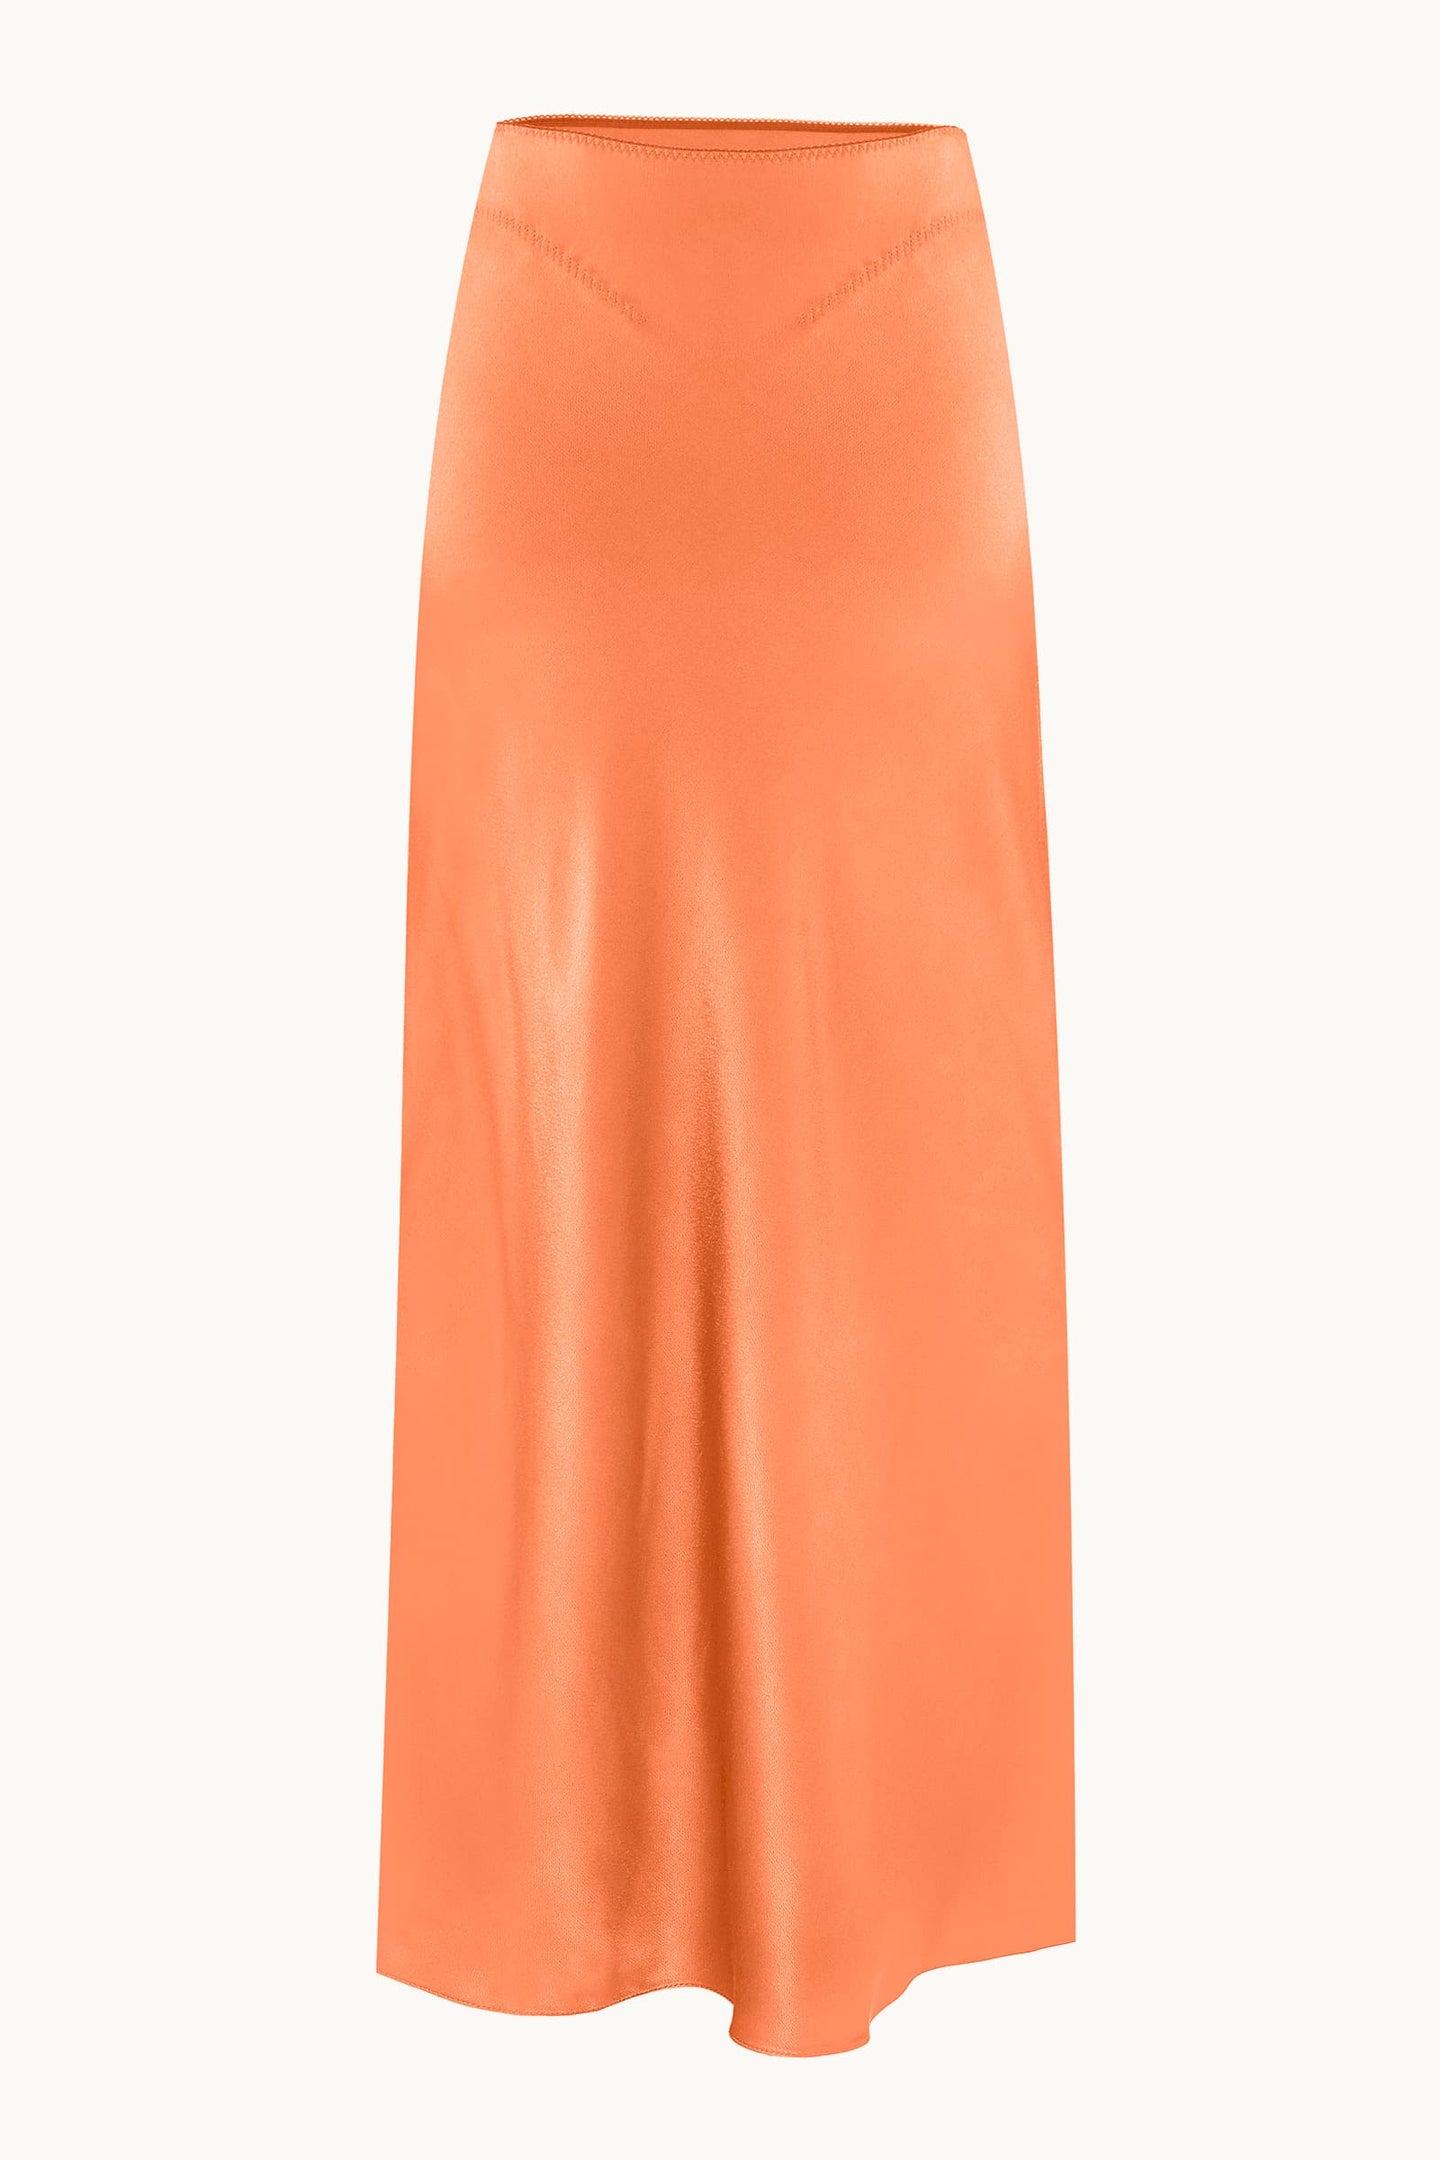 Voleta orange skirt front view